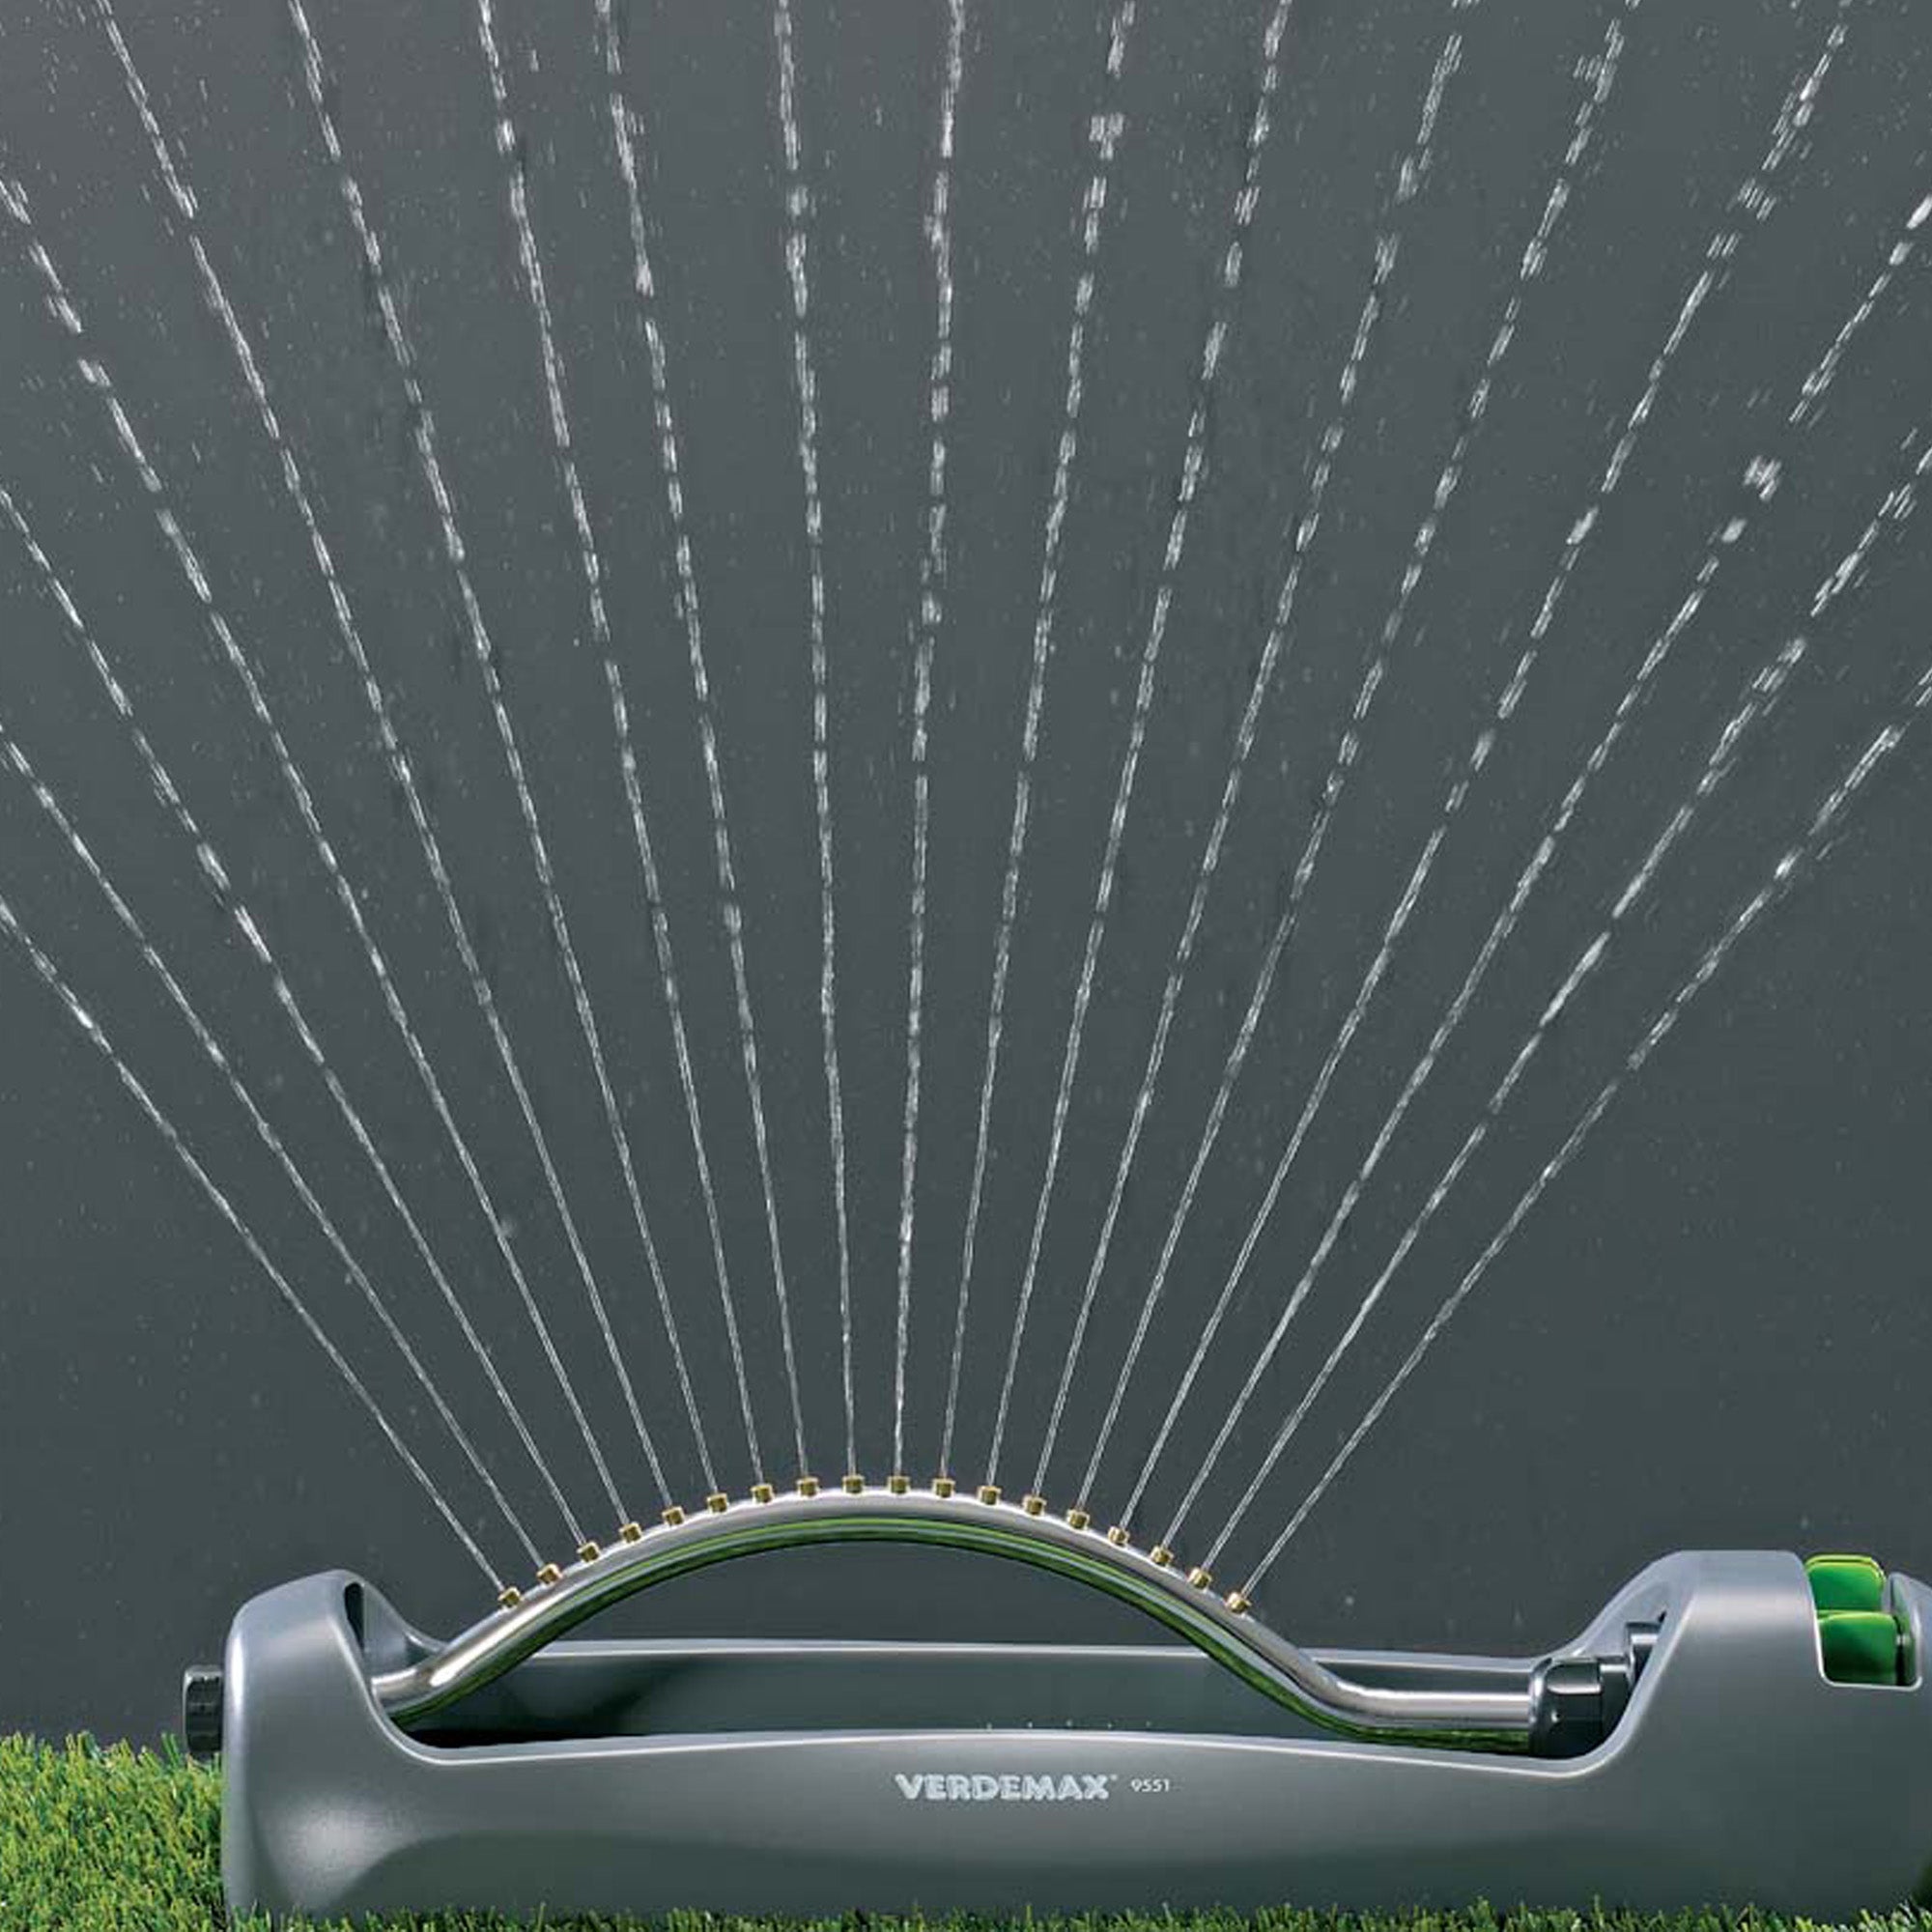 verdemax-irrigatore-oscillante-ampie-superfici